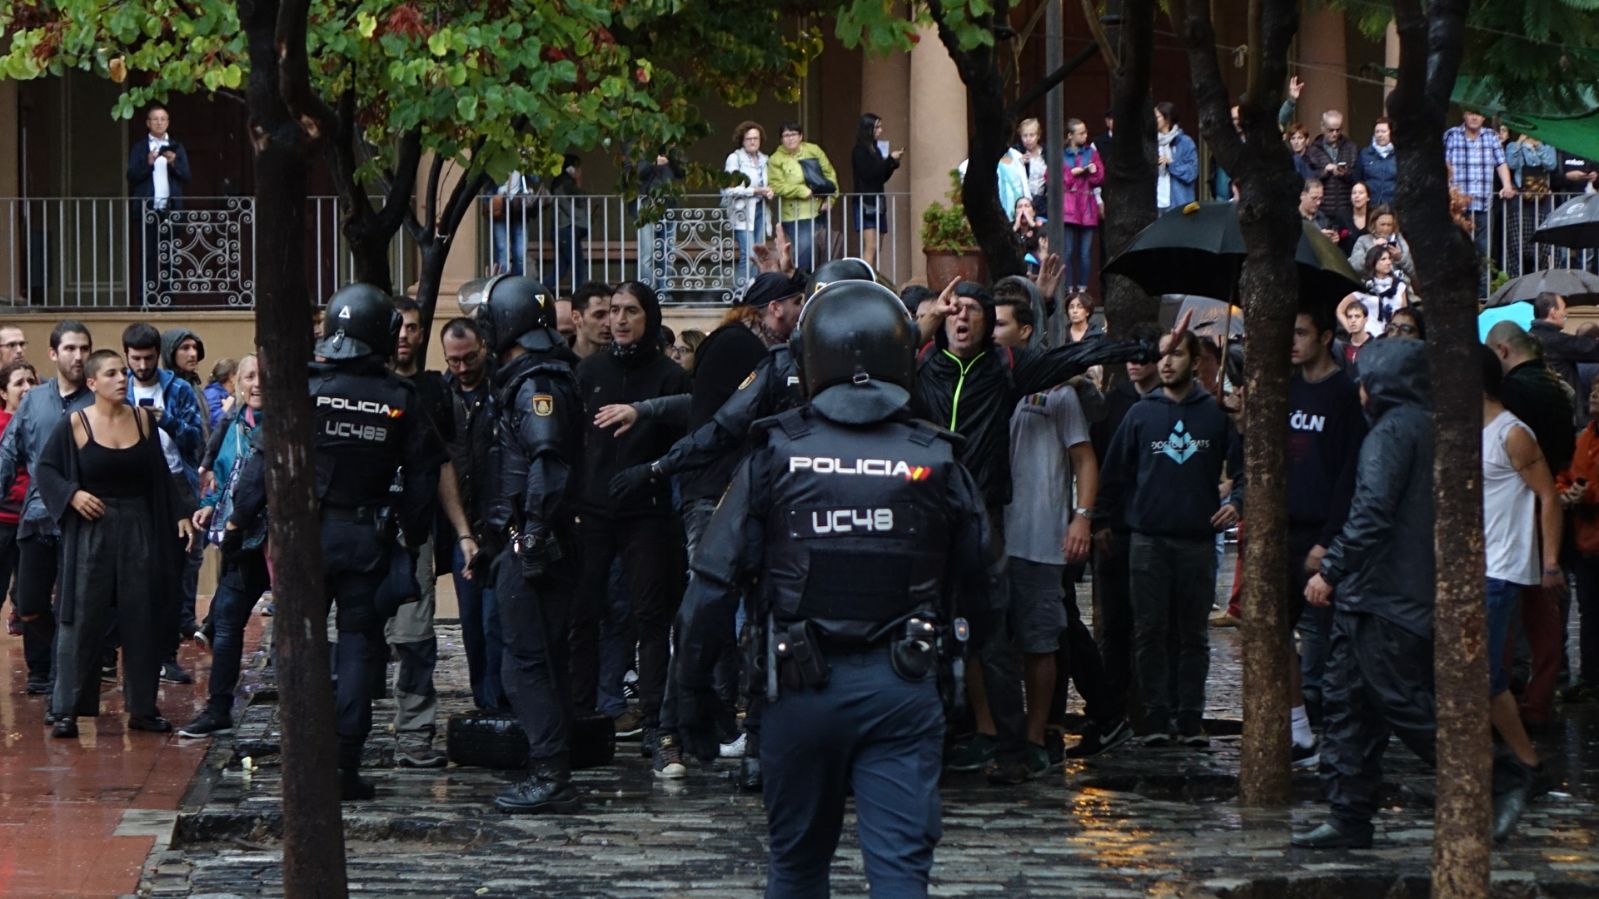 Les imatges que desmunten el relat de la policia espanyola al Ramon Llull l'1-O